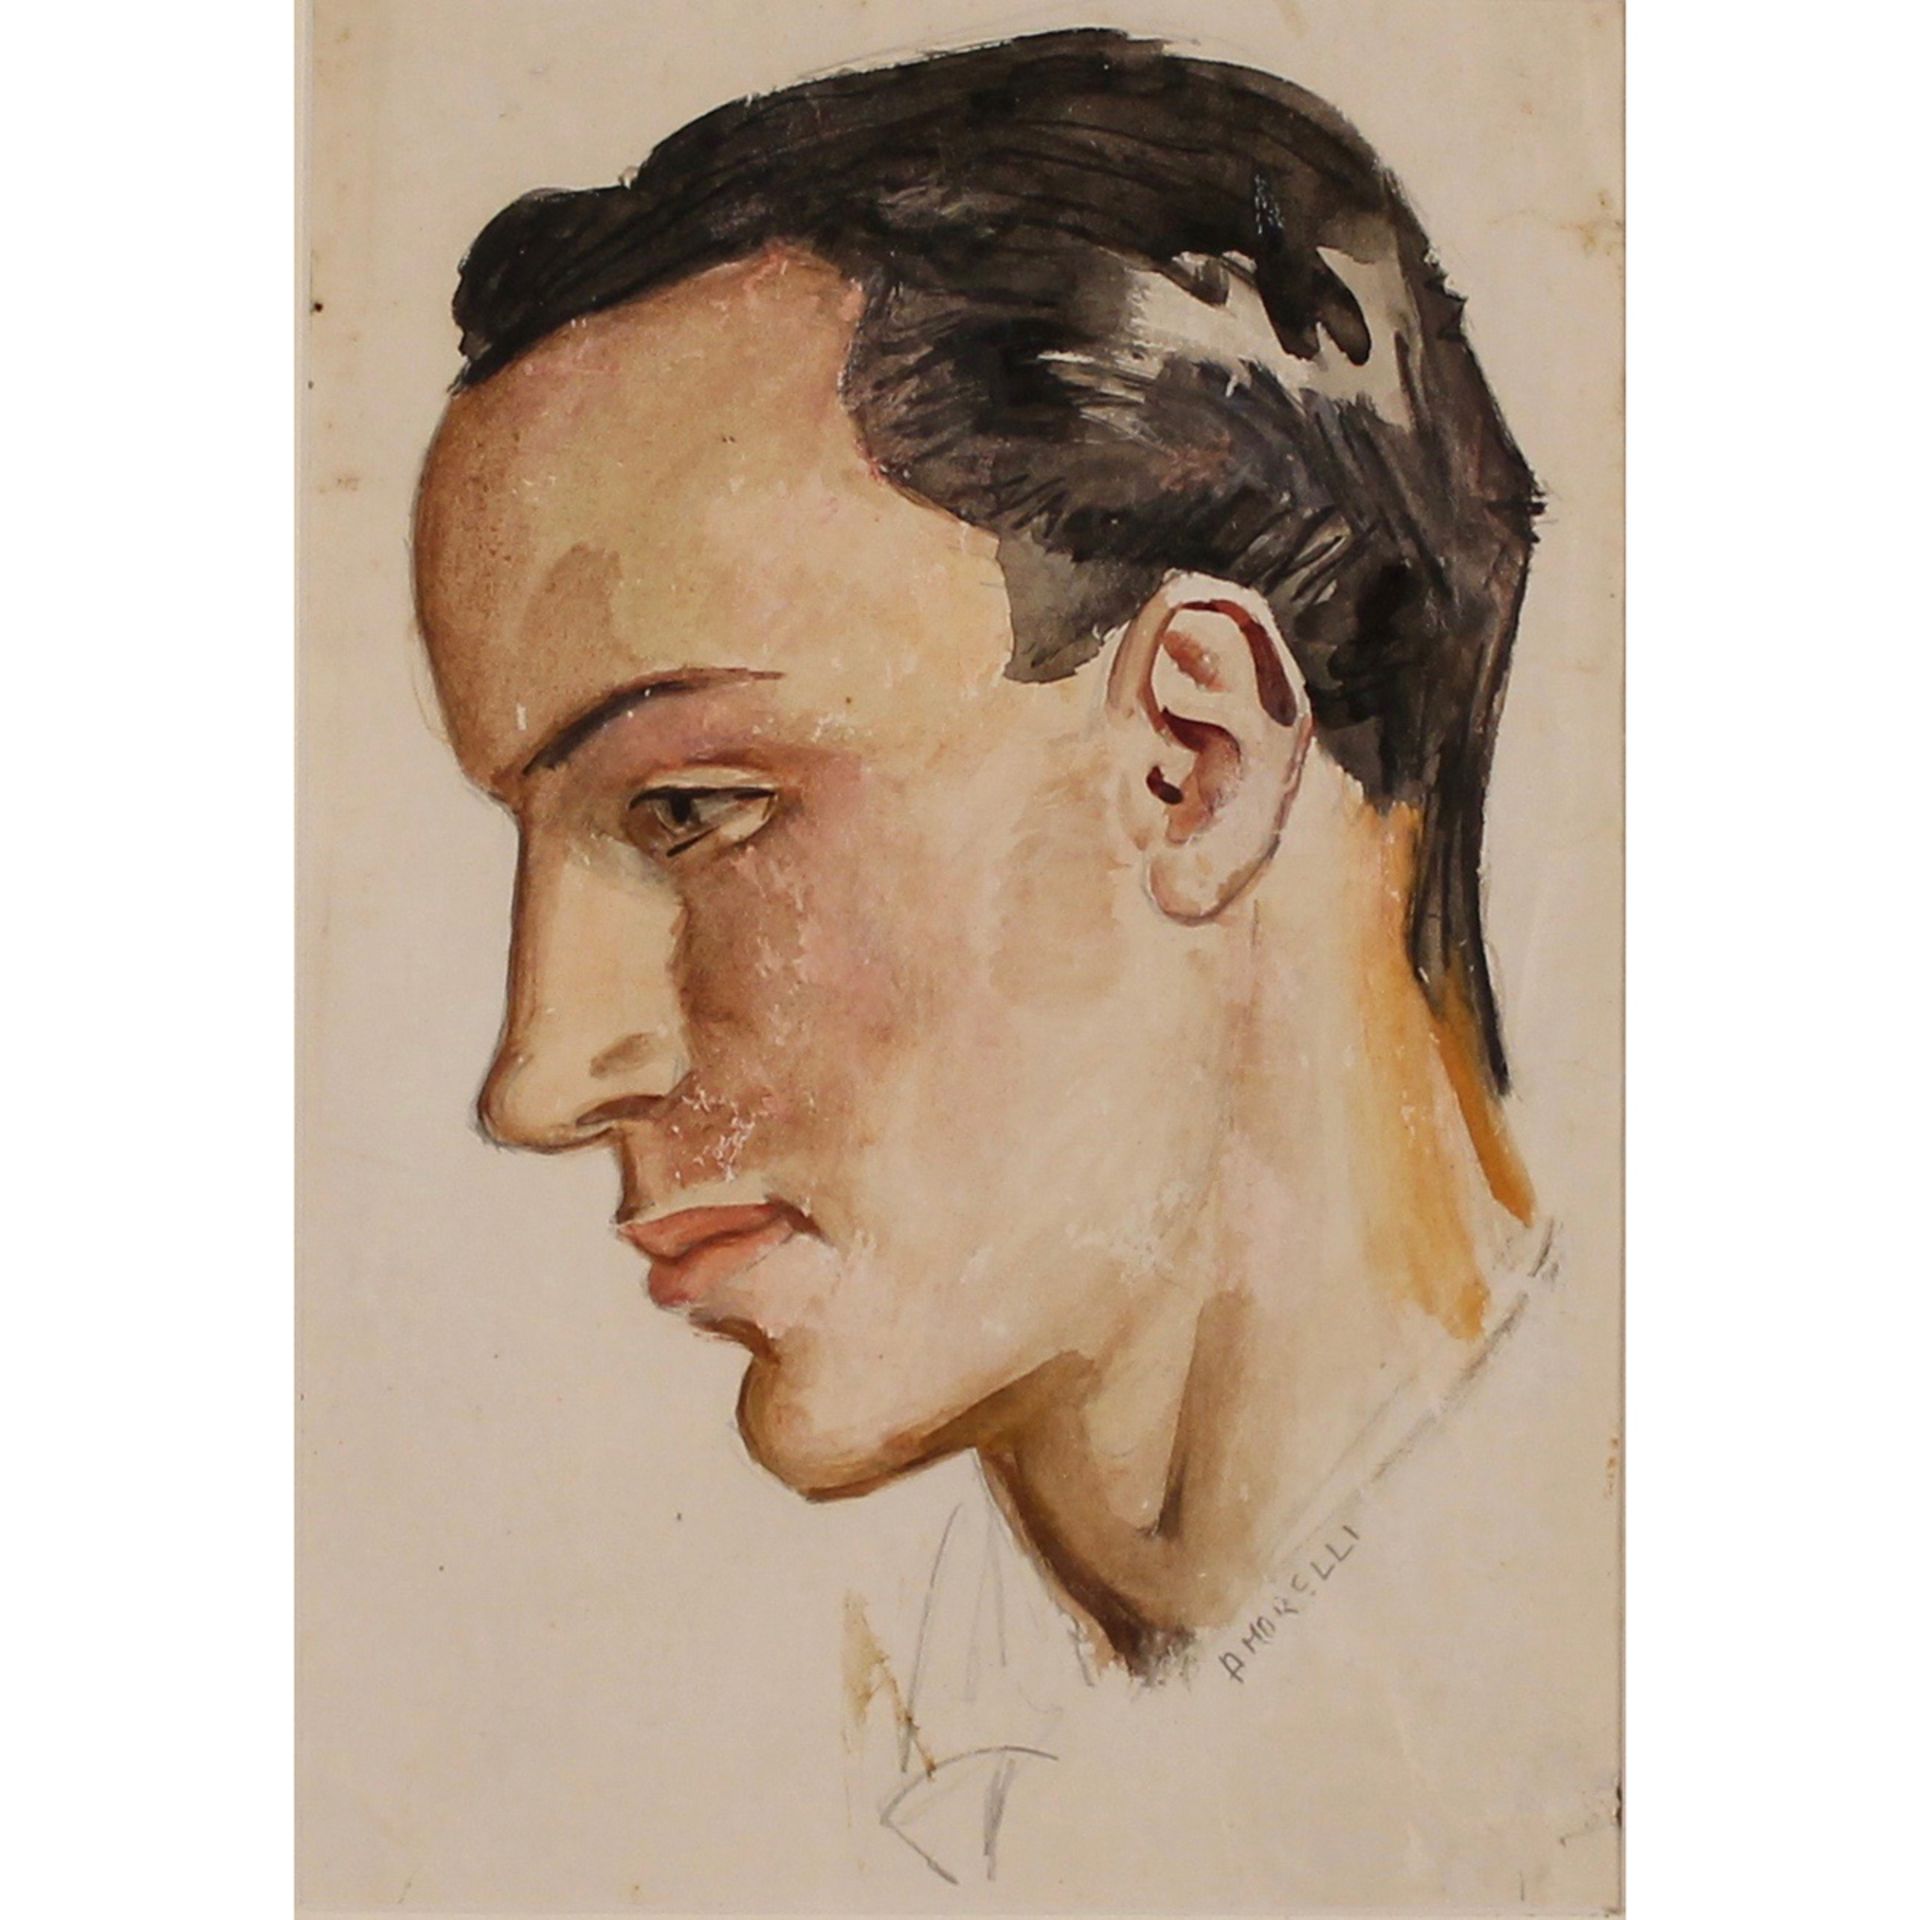 ALFONSO AMORELLI (1898-1969) "Profilo di ragazzo" - "Boy Profile"